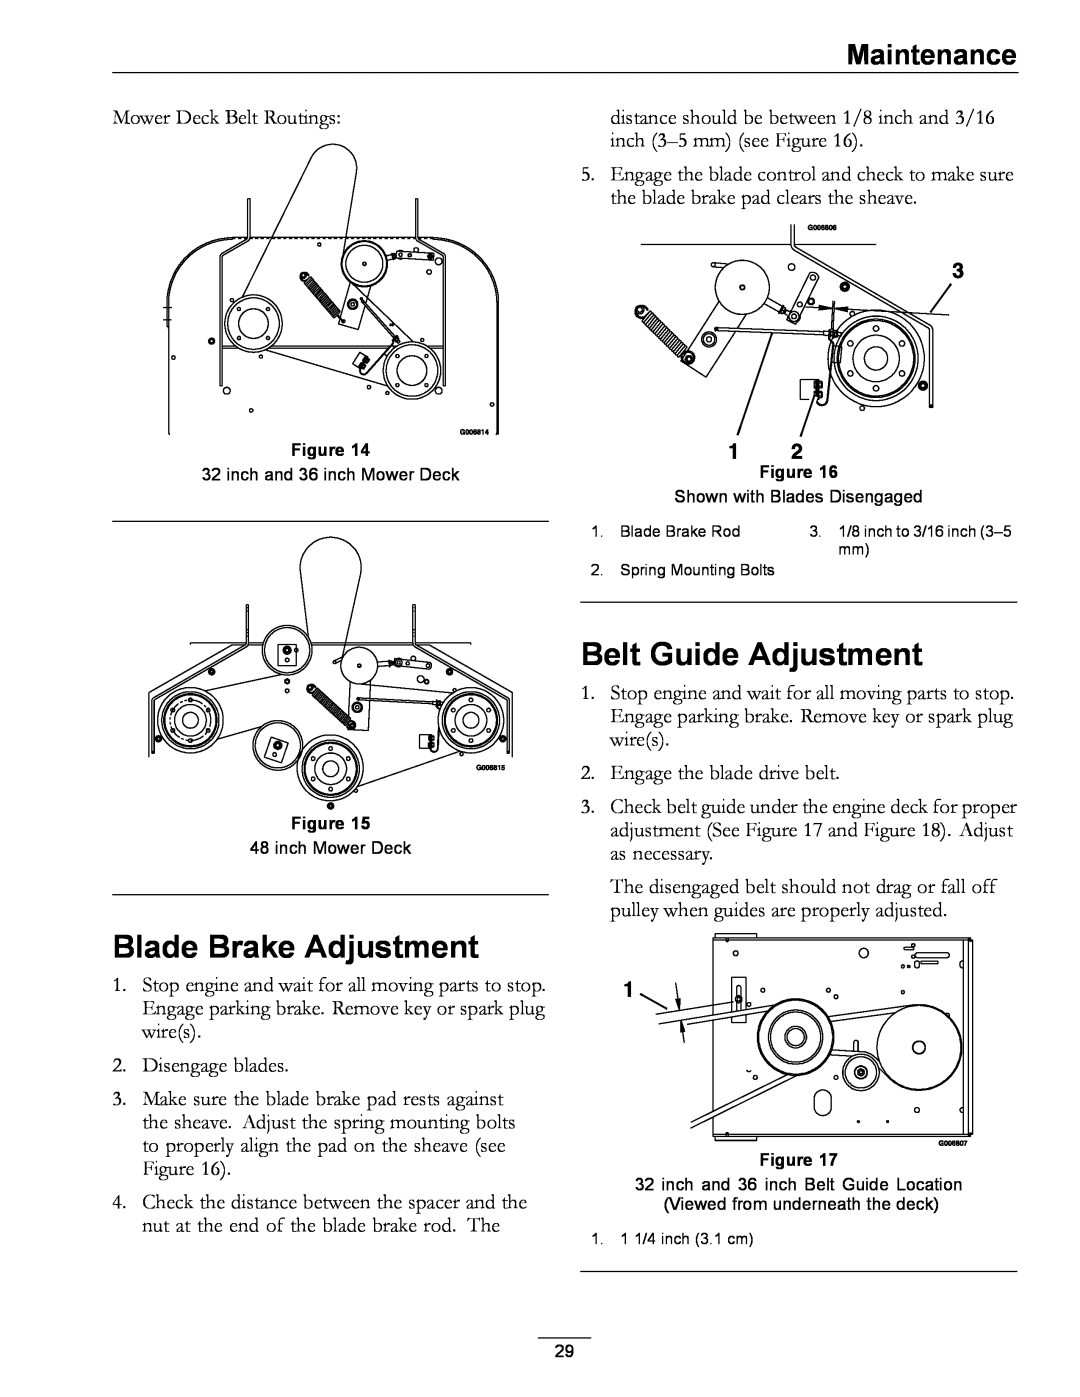 Exmark 4500-352 manual Blade Brake Adjustment, Belt Guide Adjustment, Maintenance 